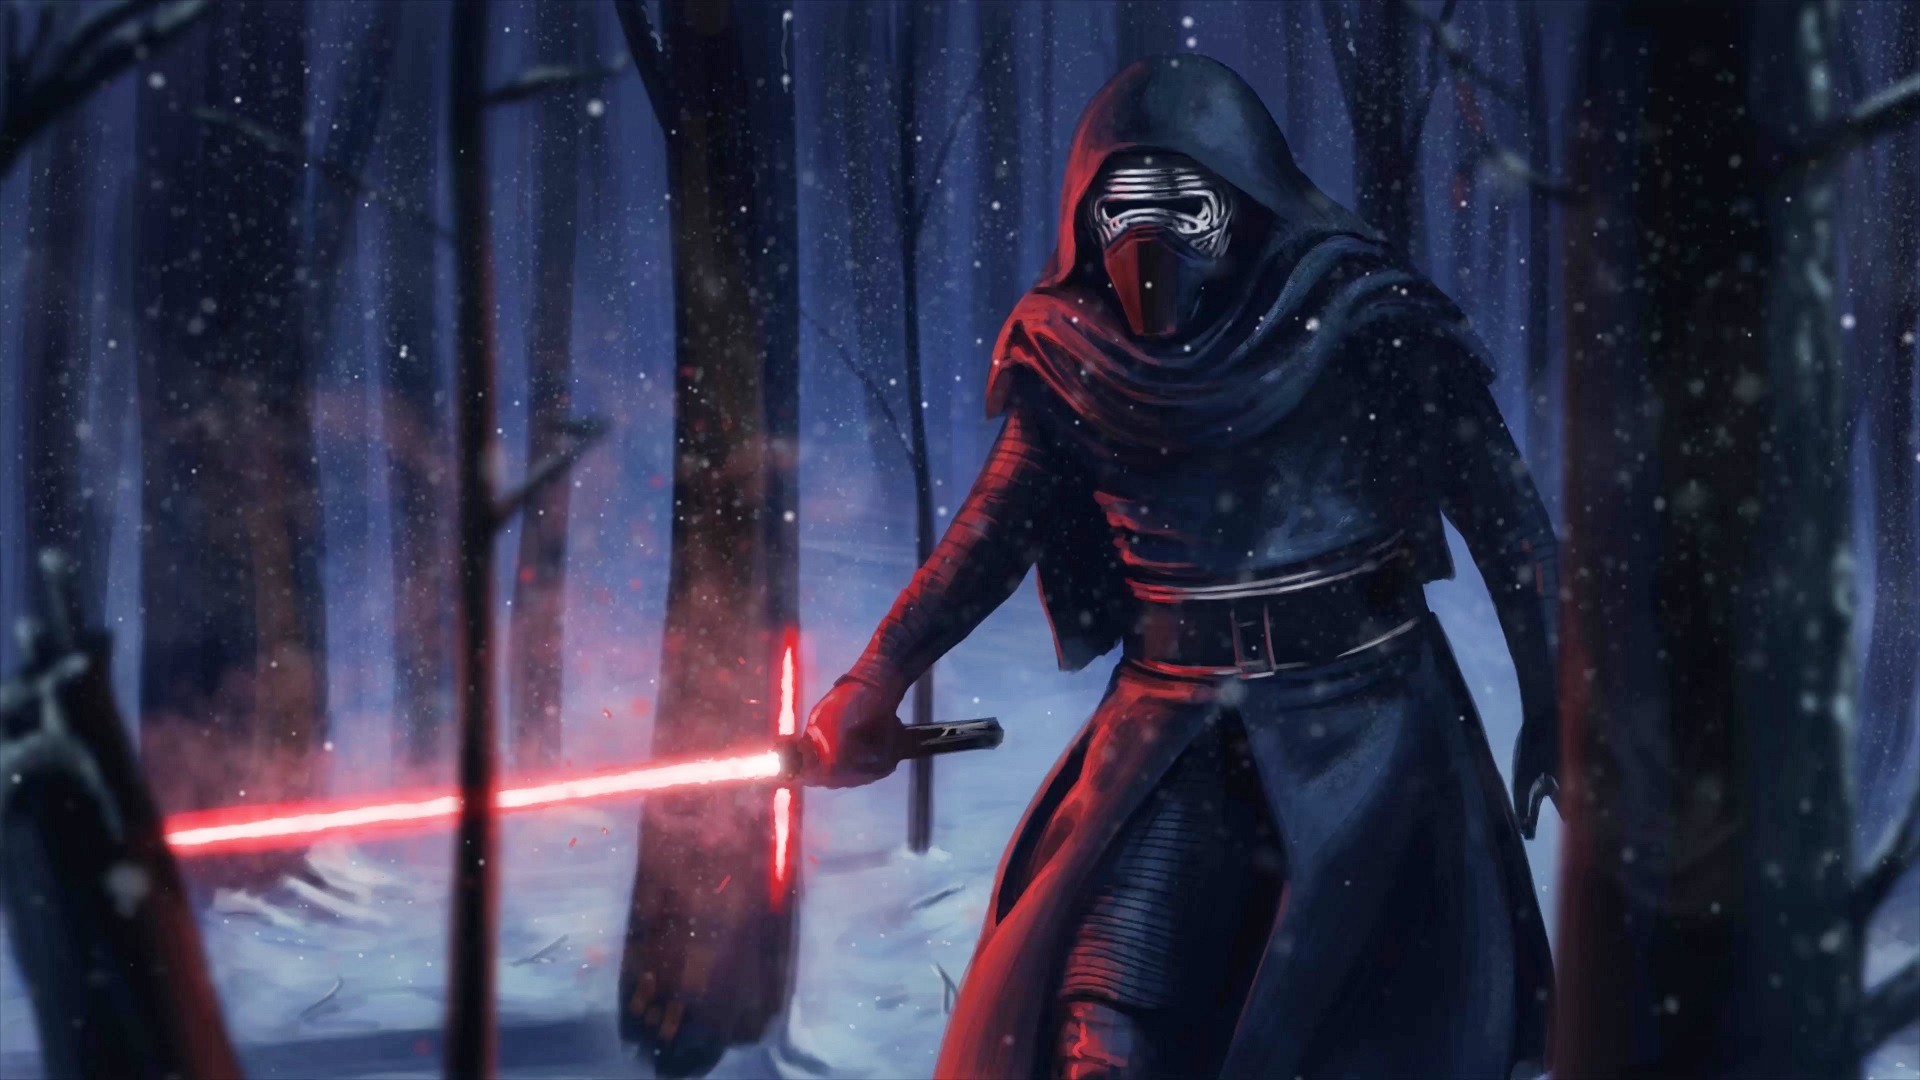 Kylo Ren ने Star Wars: The Force Awakens में अपने लाइटसैबर का इस्तेमाल किया।